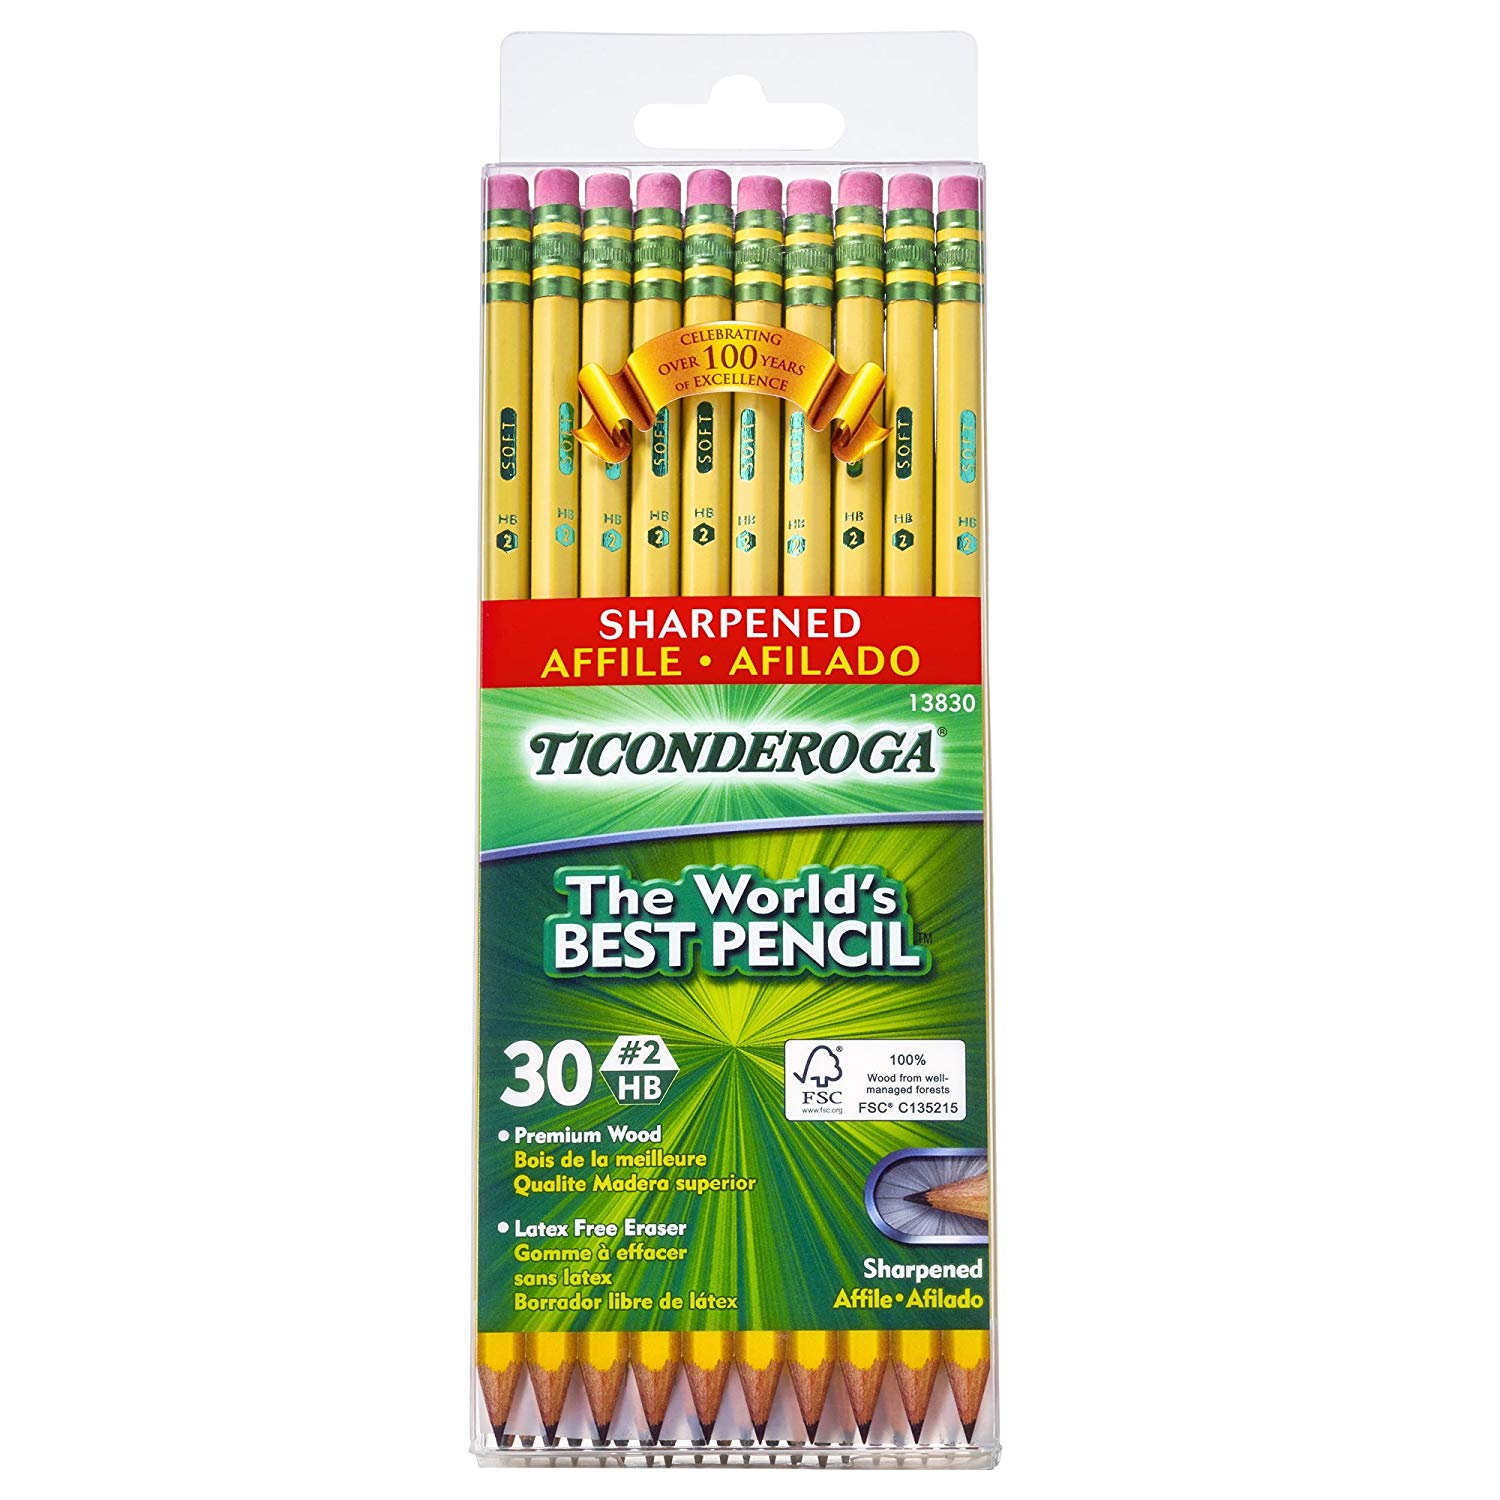 ticonderoga pencils